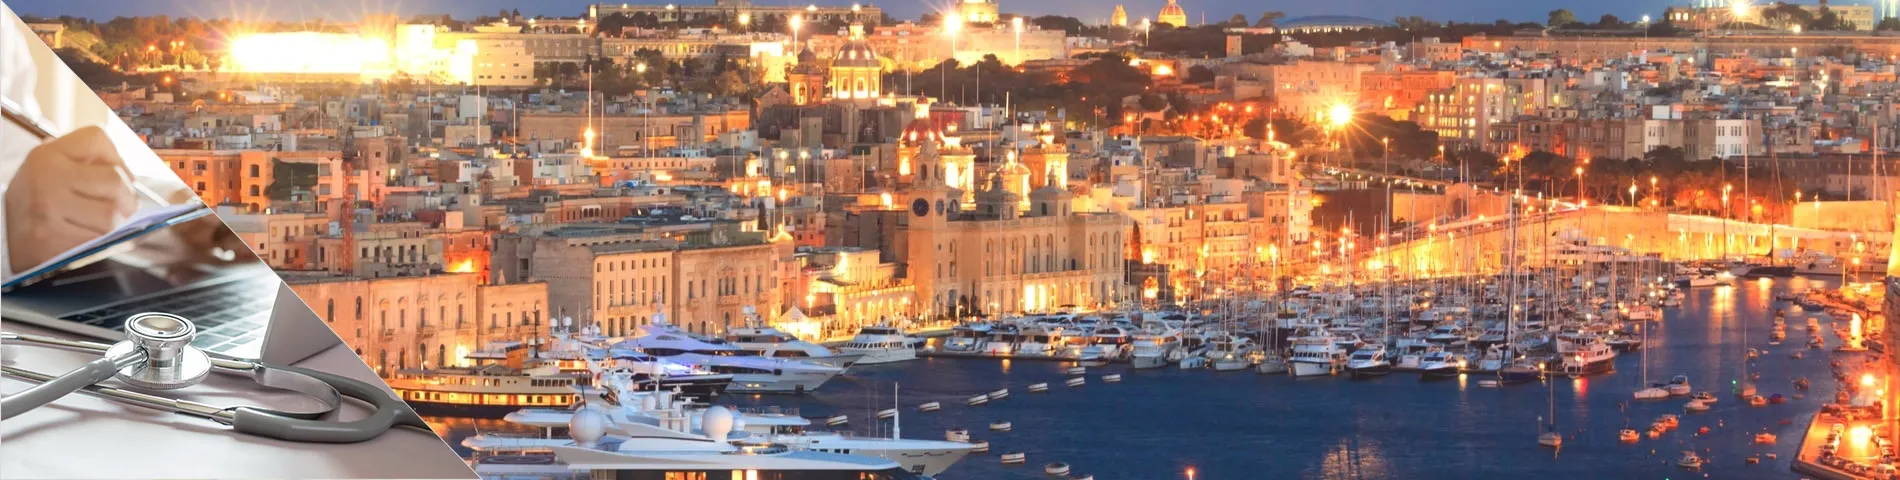 Valletta - Health